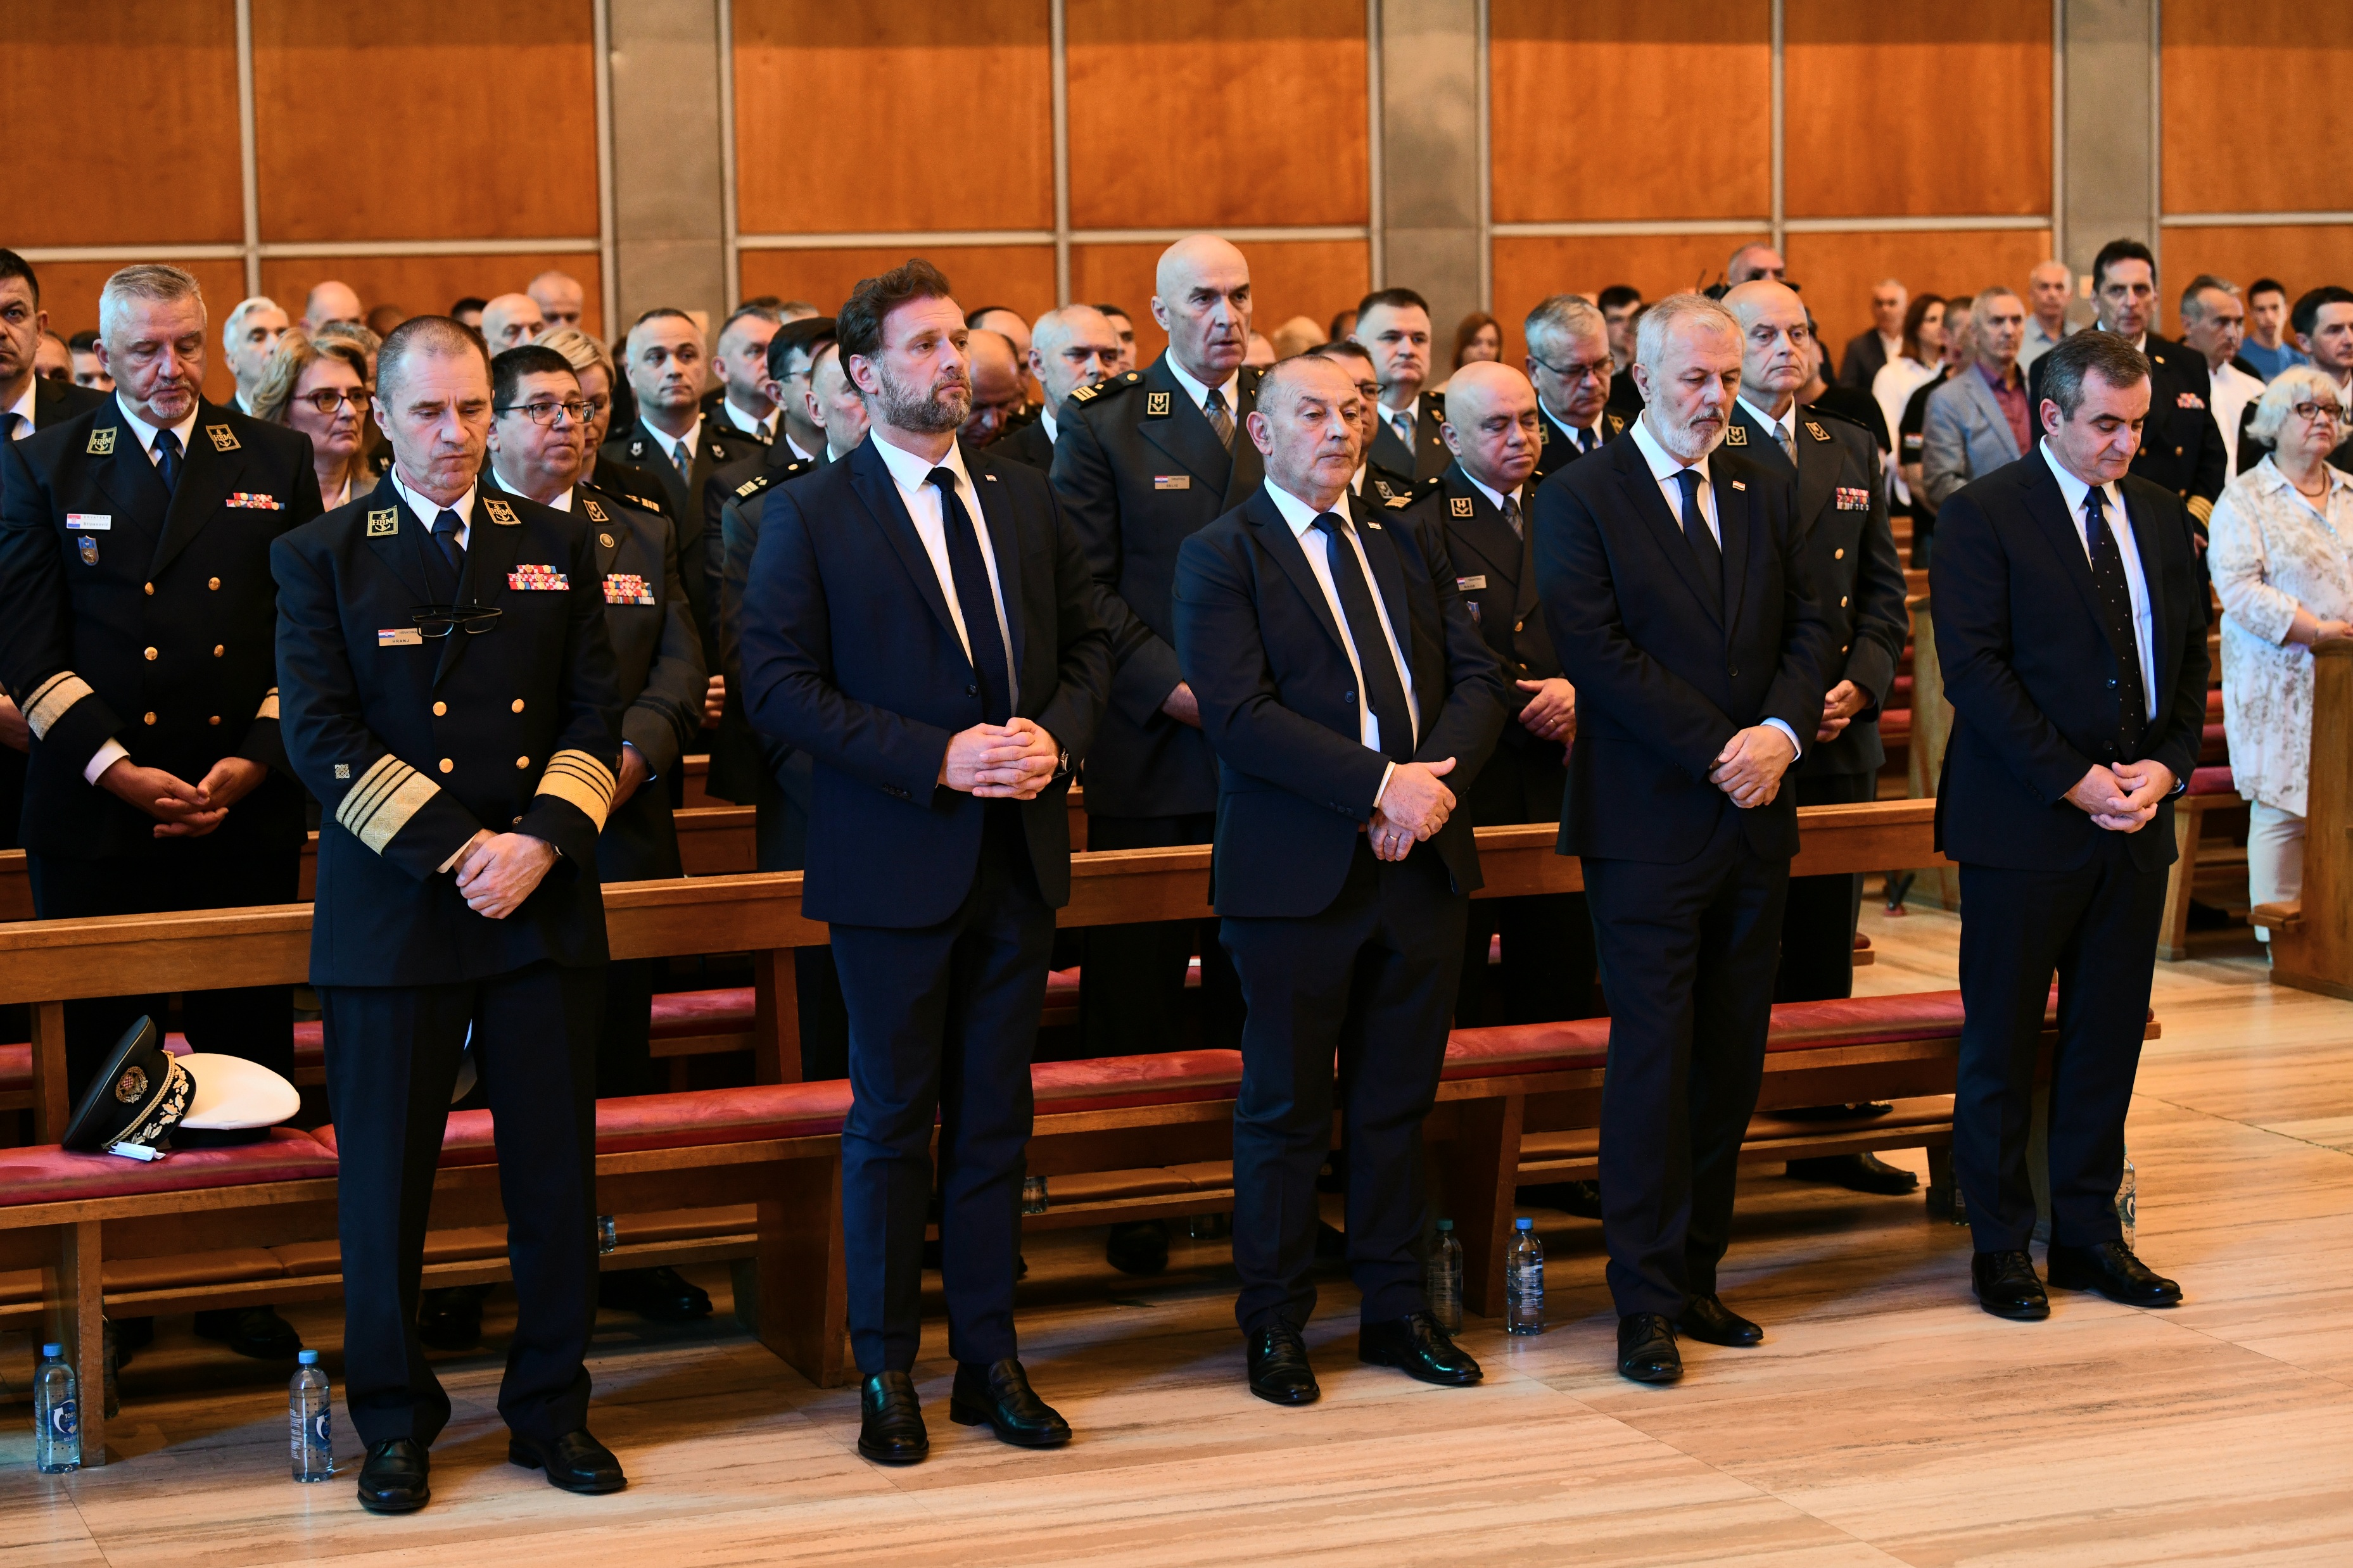 Održano misno slavlje povodom Dana Hrvatske vojske i Dana Hrvatske kopnene vojske